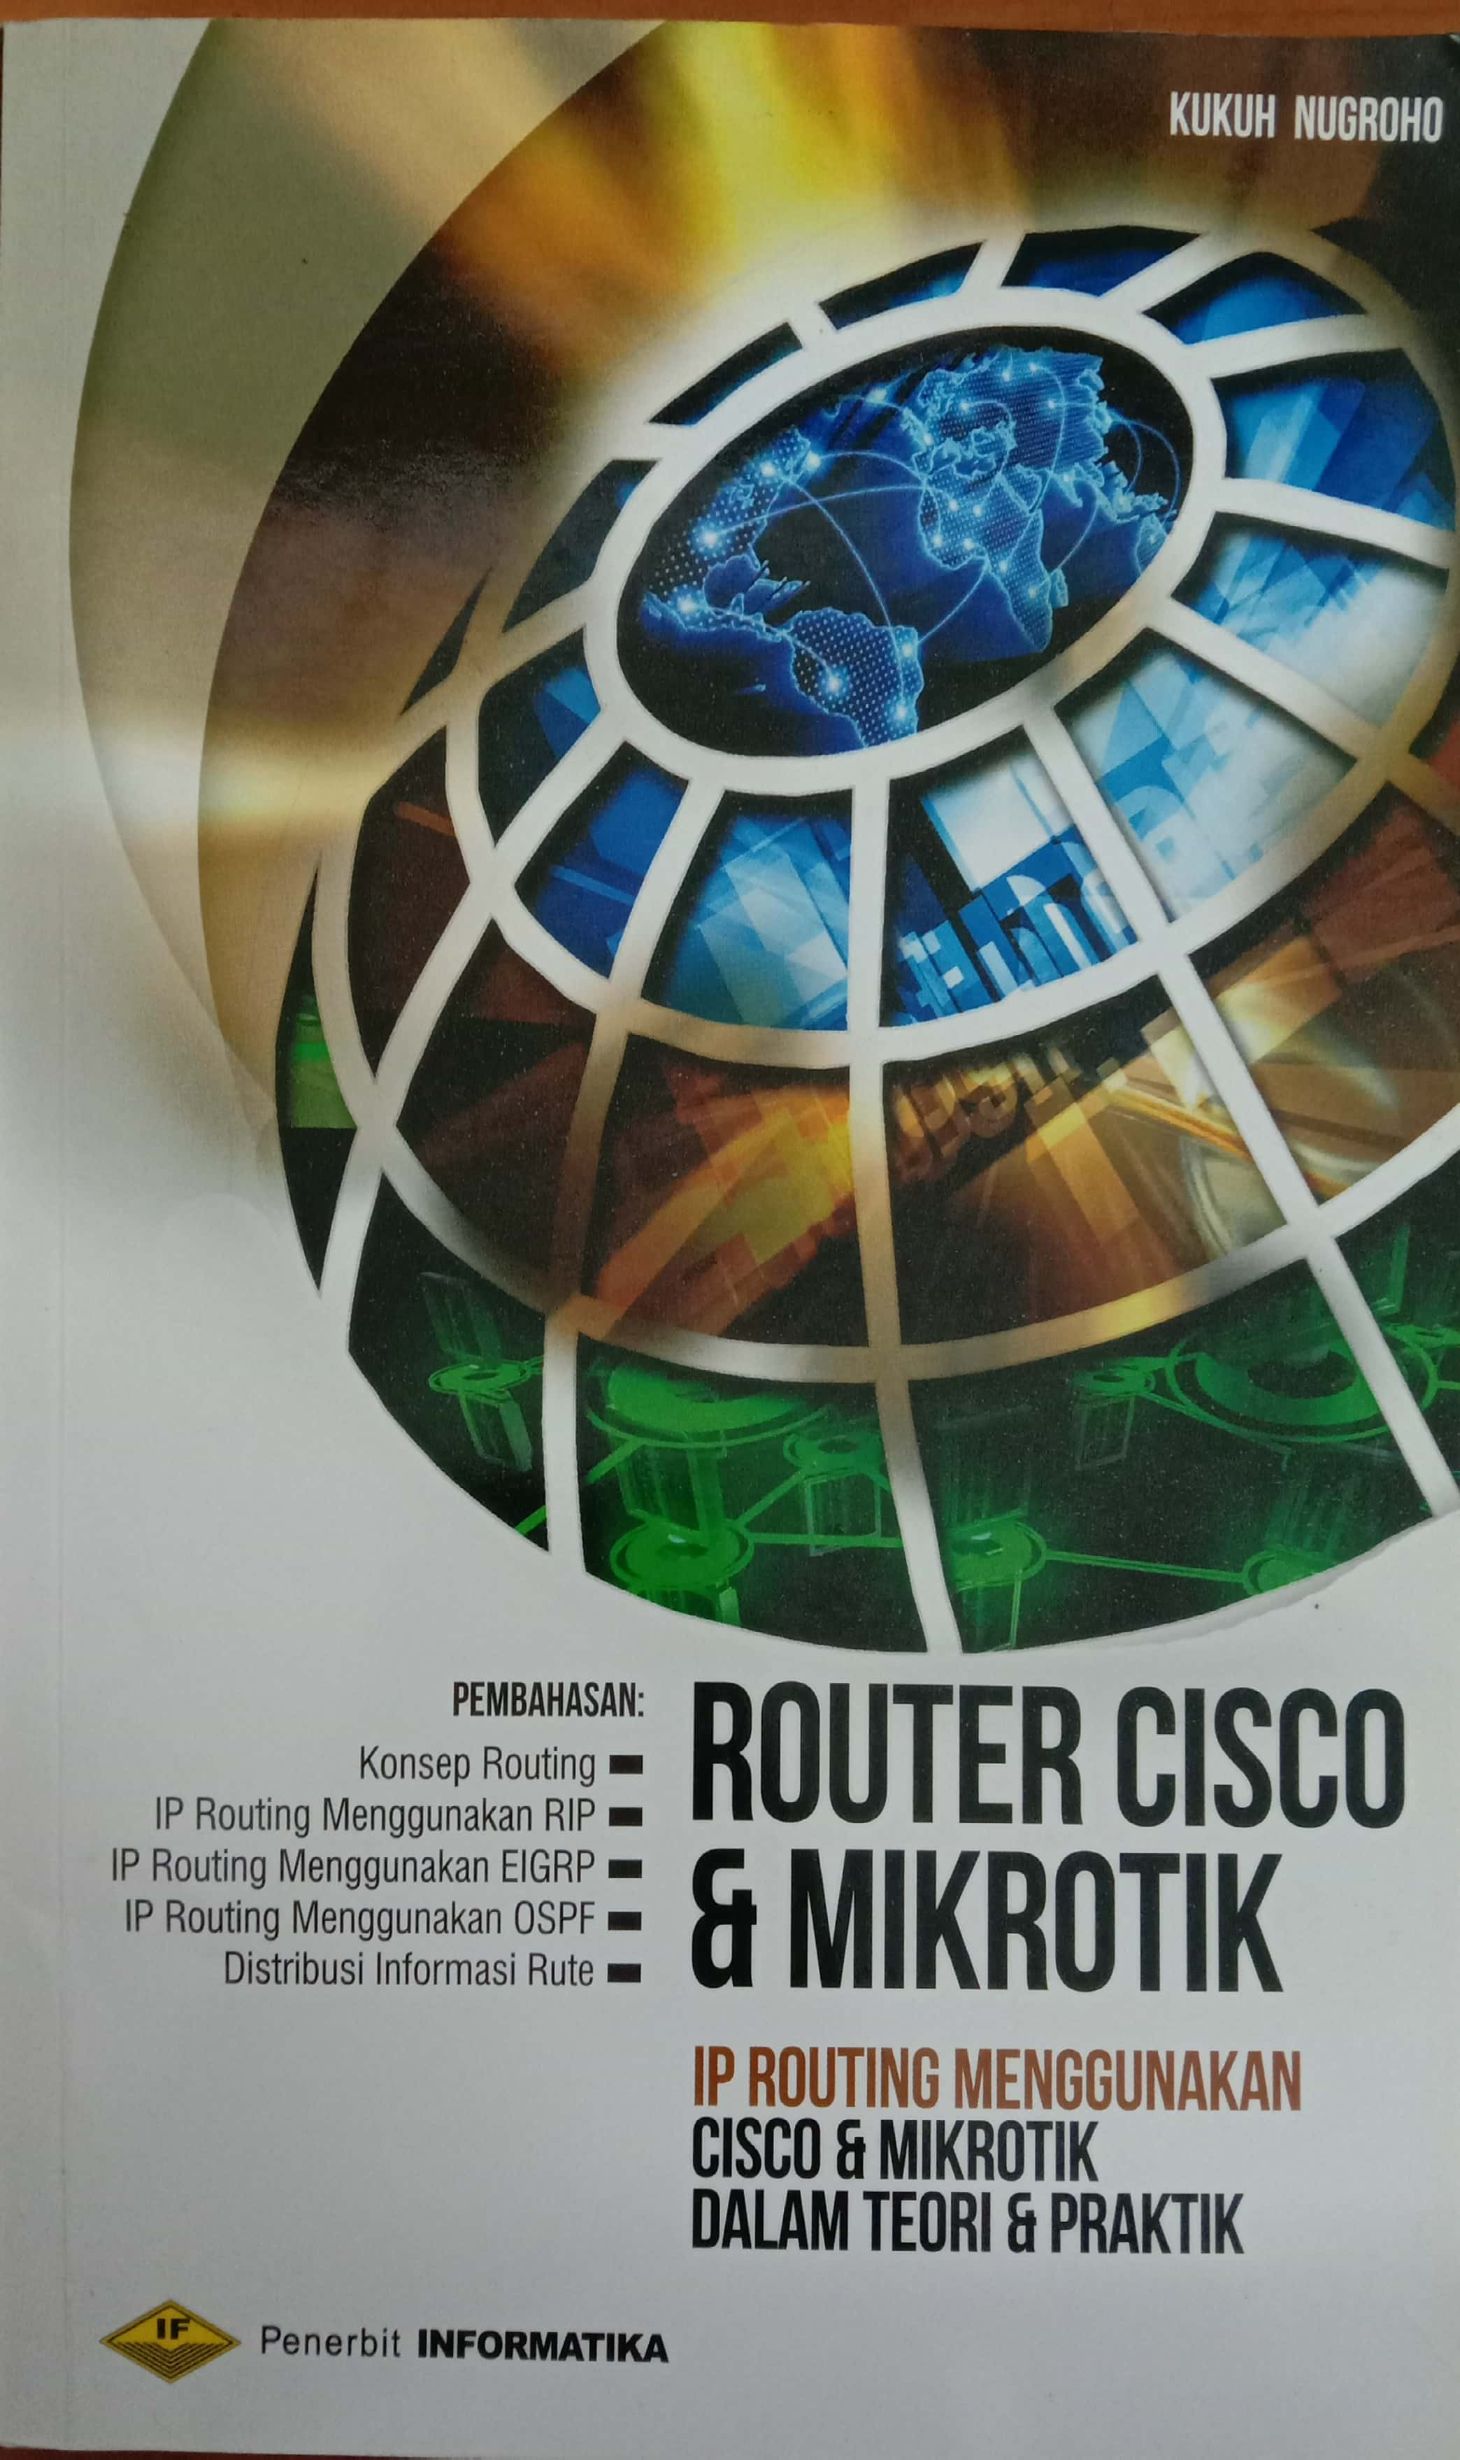 Router Cisco & Mikrotik : IP Routing Menggunakan Cisco dan Mikrotik dalam Teori dan Praktik